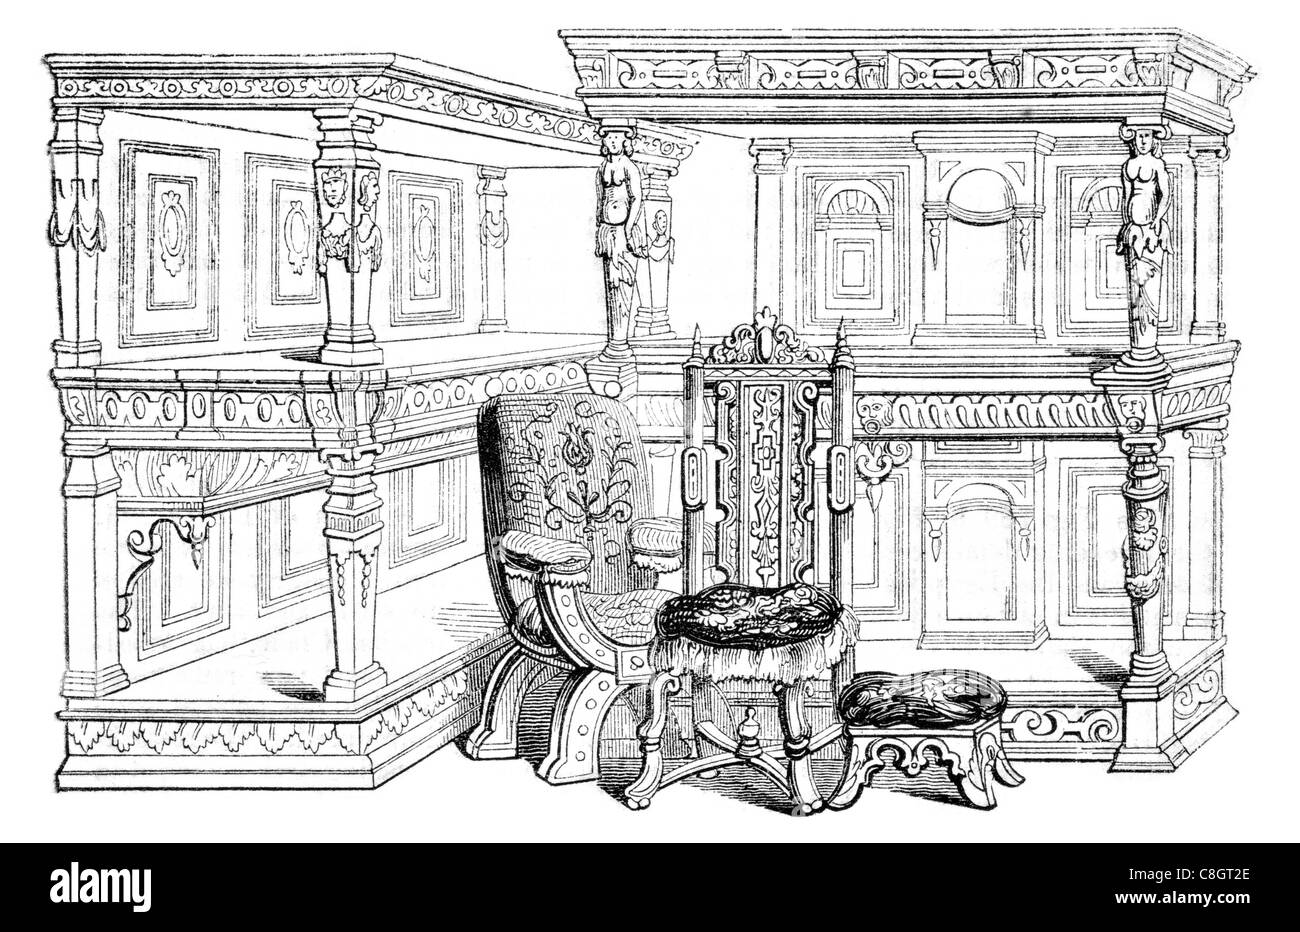 Salón mobiliario taburete silla estantería armario ornamentado antique 16th siglo xvi estudio de la oficina de madera tallada en madera Foto de stock